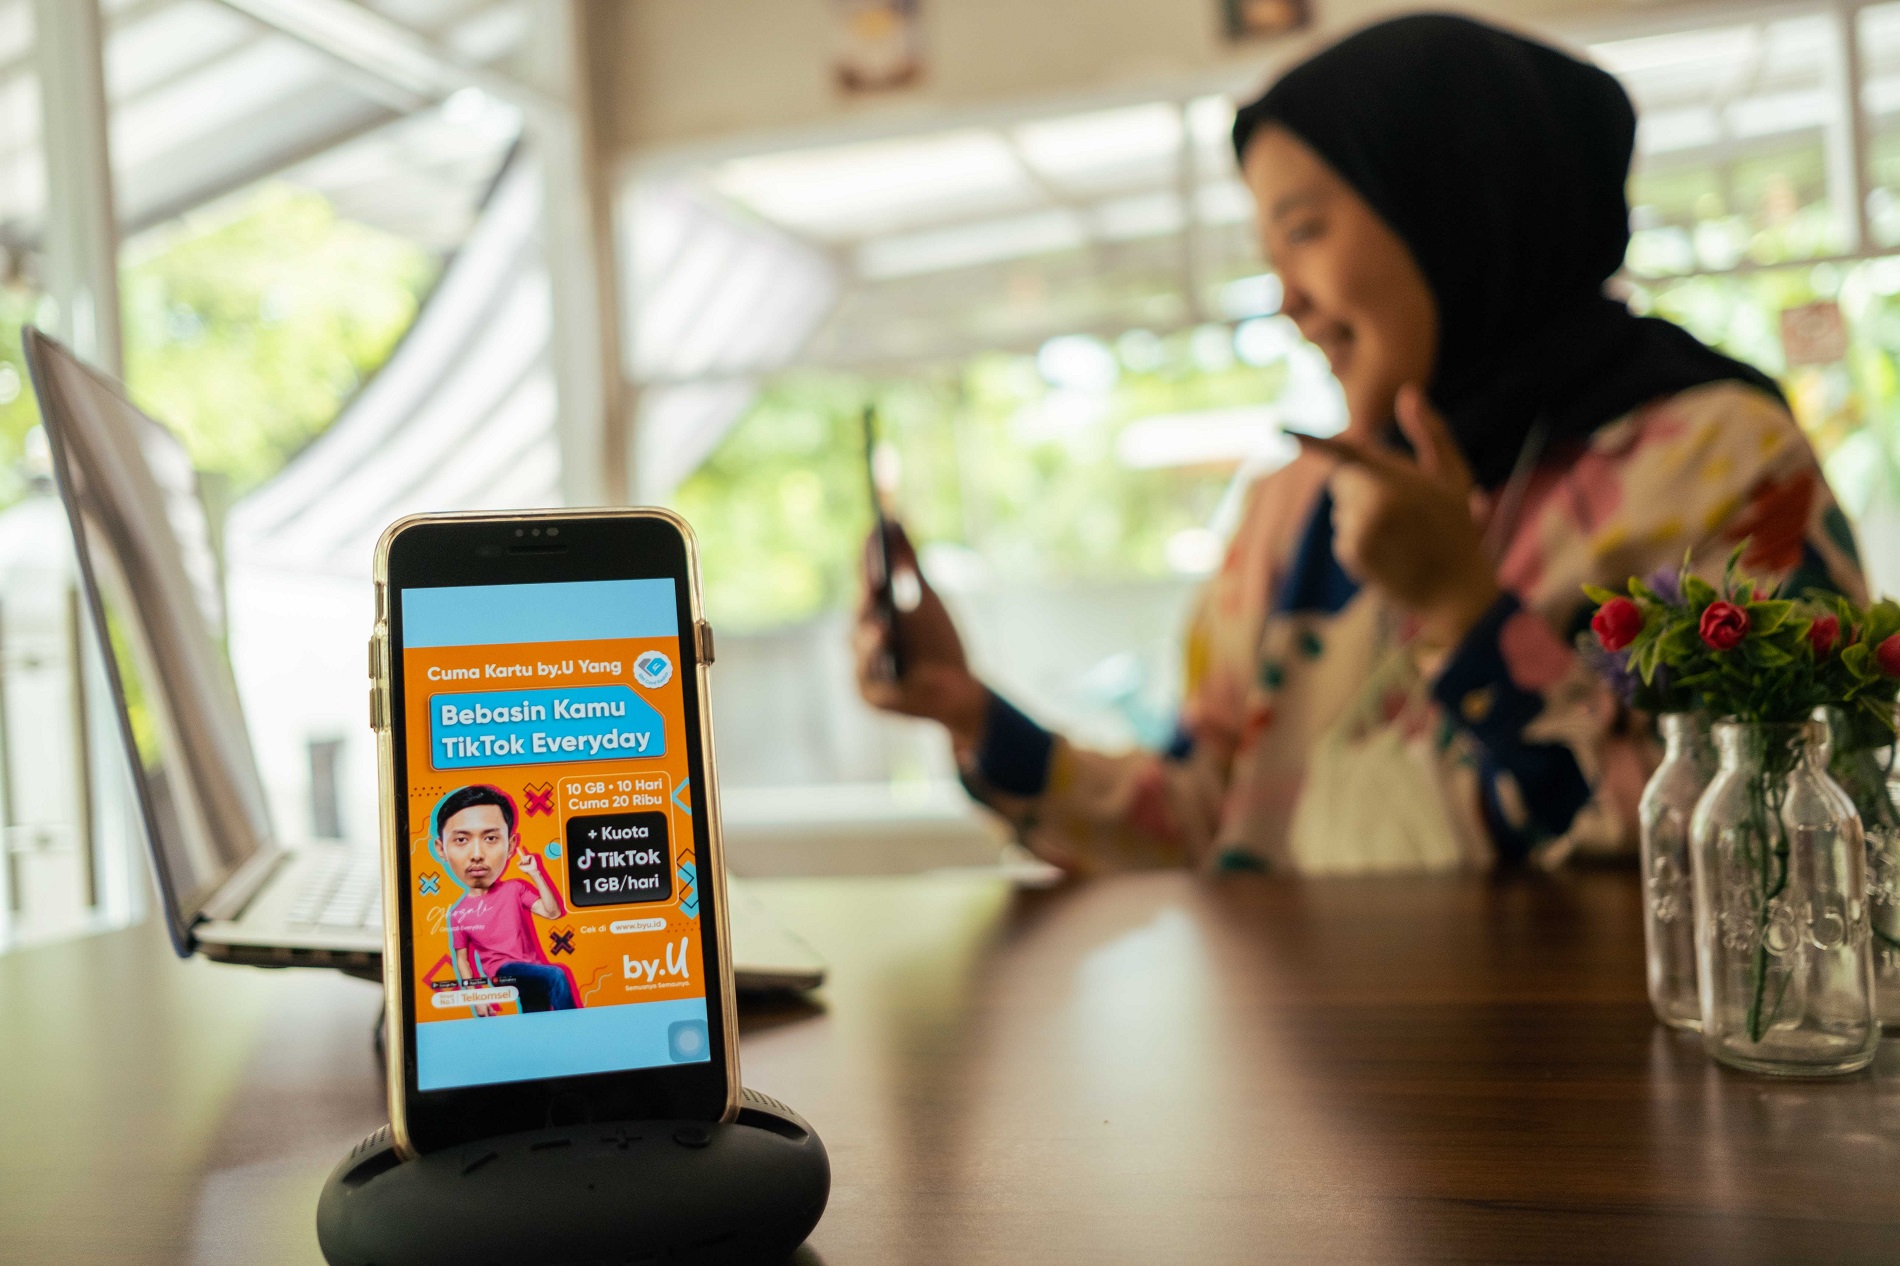  by.U meluncurkan promo bertajuk TikTok Everyday yang memberikan kuota 1 GB/hari untuk akses TikTok saat pelanggan melakukan pembelian kuota apapun. Penawaran ini memperkuat komitmen by.U sebagai layanan seluler prabayar digital Indonesia yang memberikan 